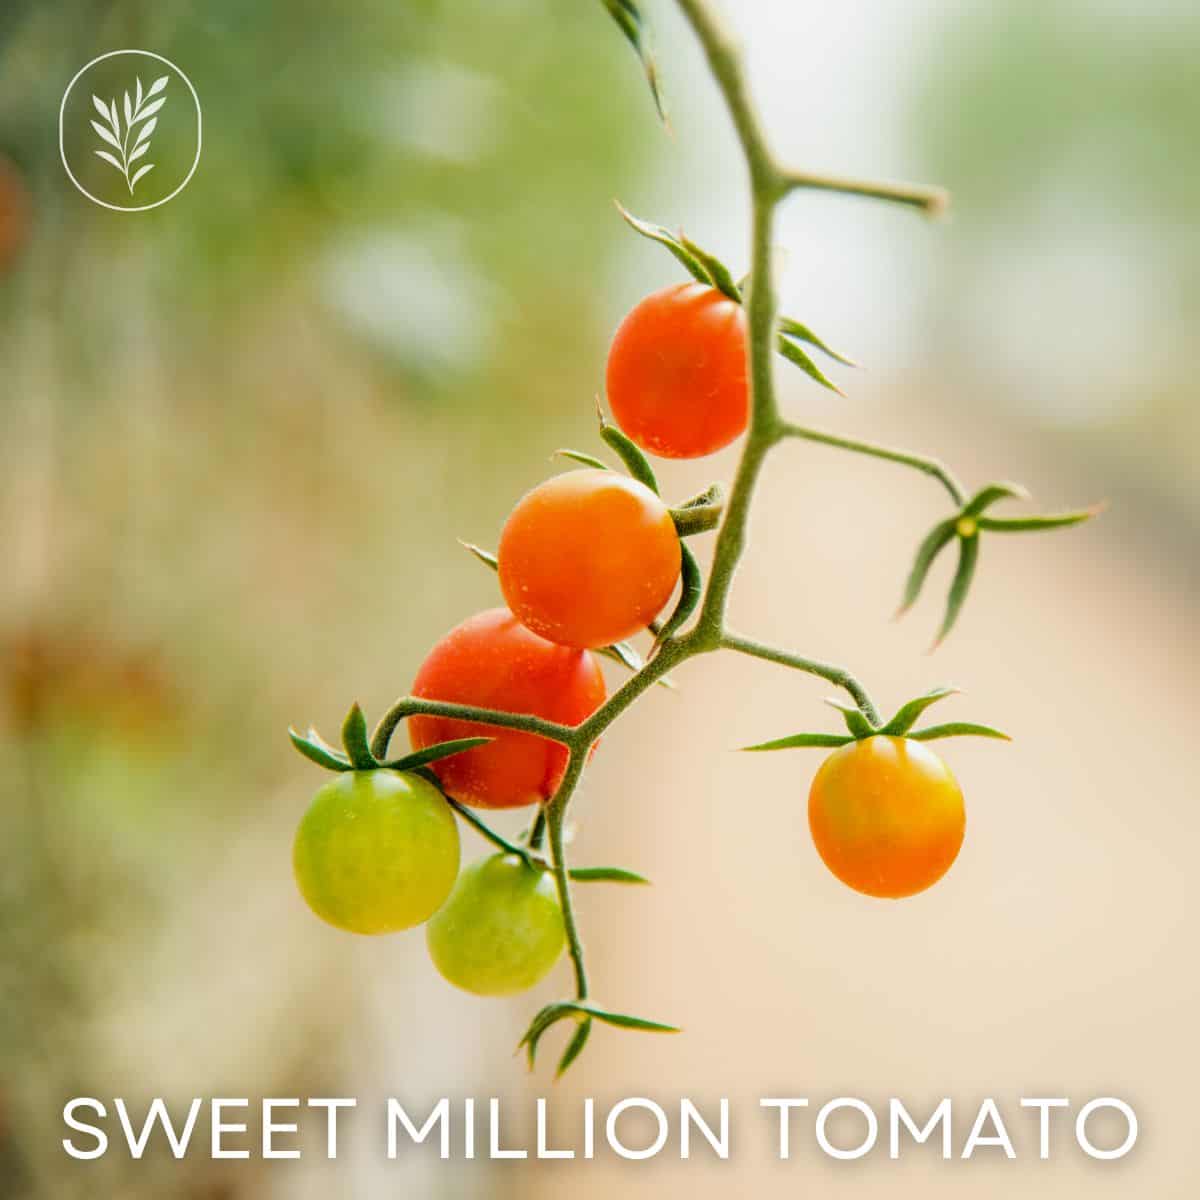 Sweet million tomato via @home4theharvest